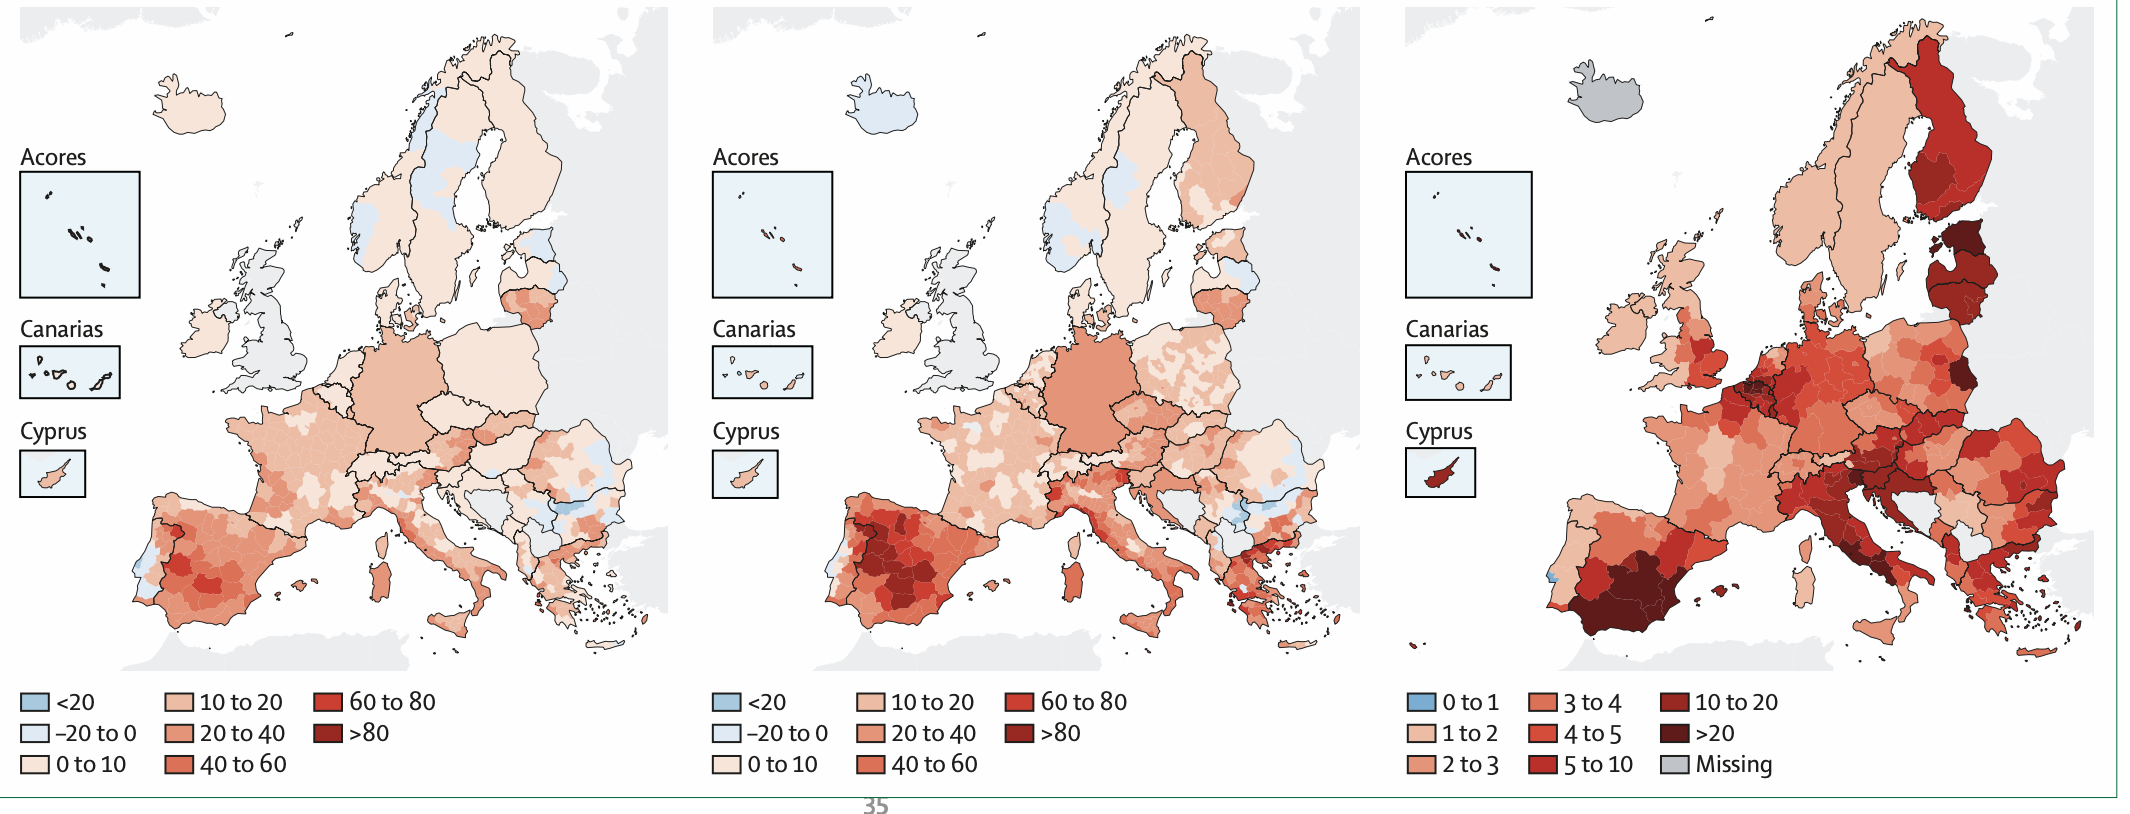 Cambiamenti climatici e salute nel rapporto “The Lancet Countdown in Europe”